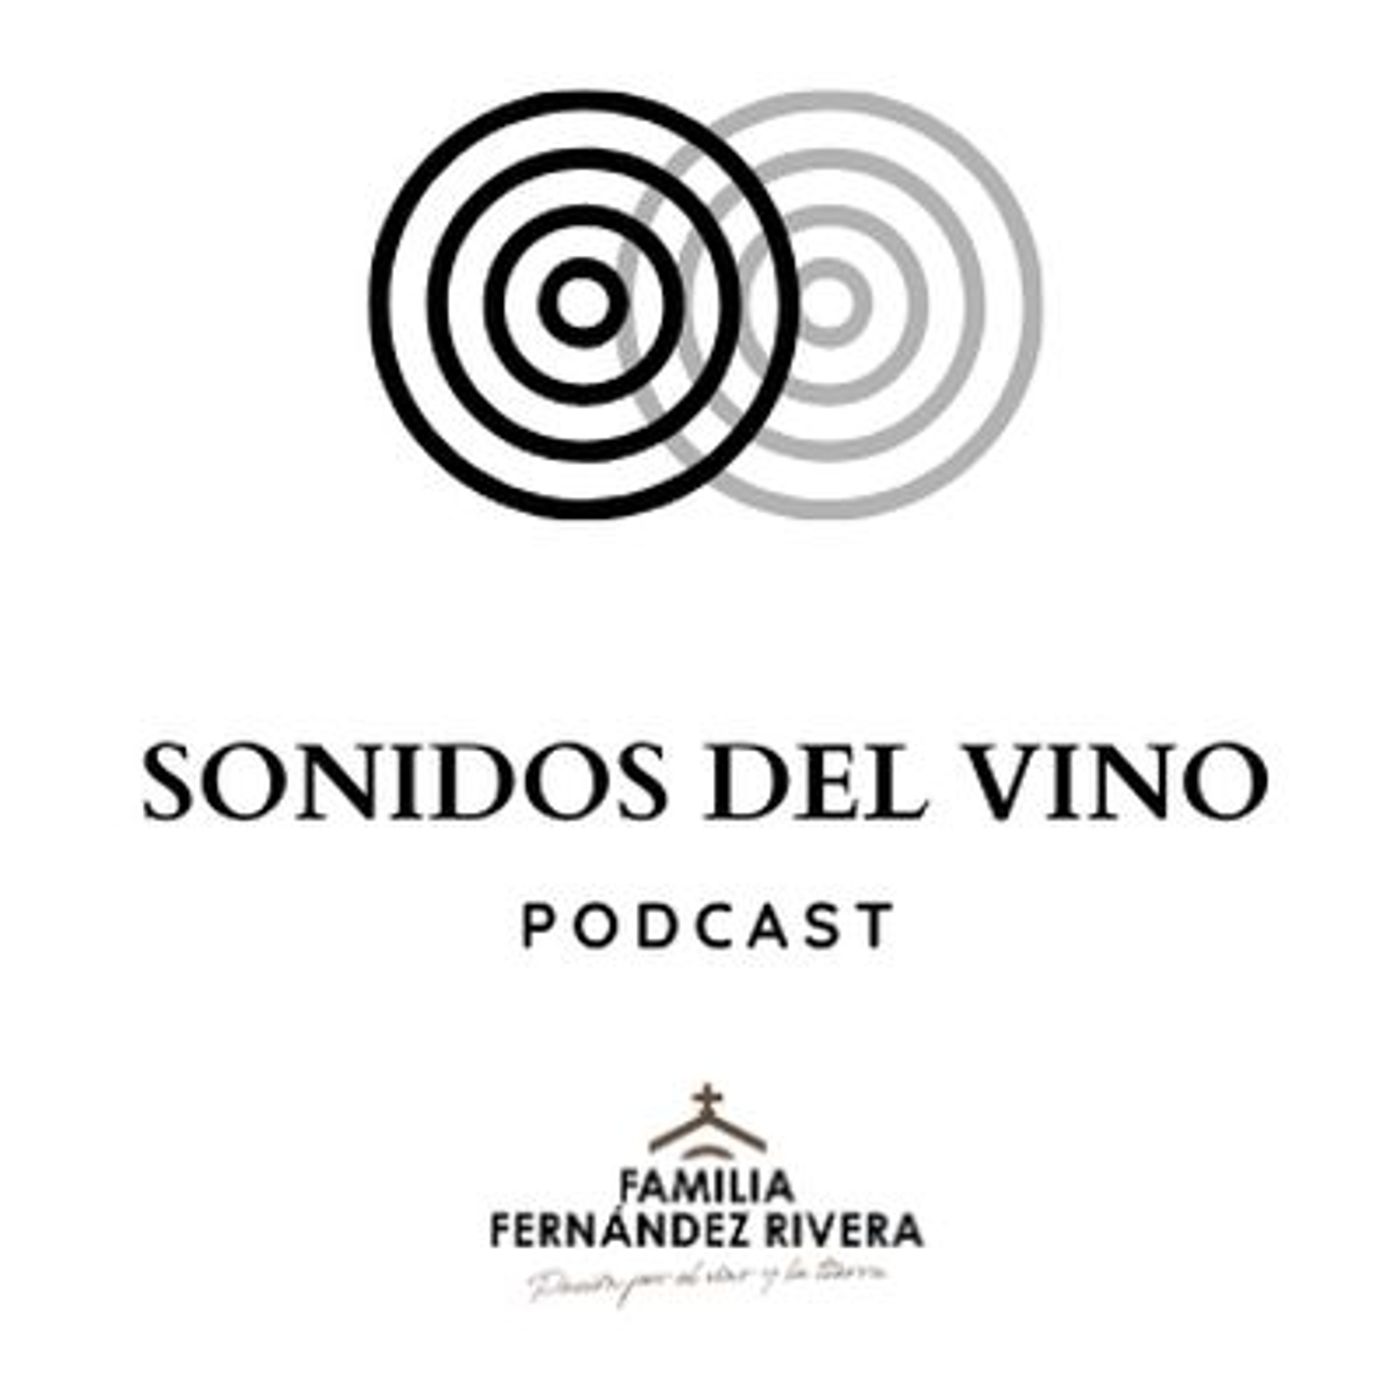 Sonidos del Vino #40 - Planes originales con vino